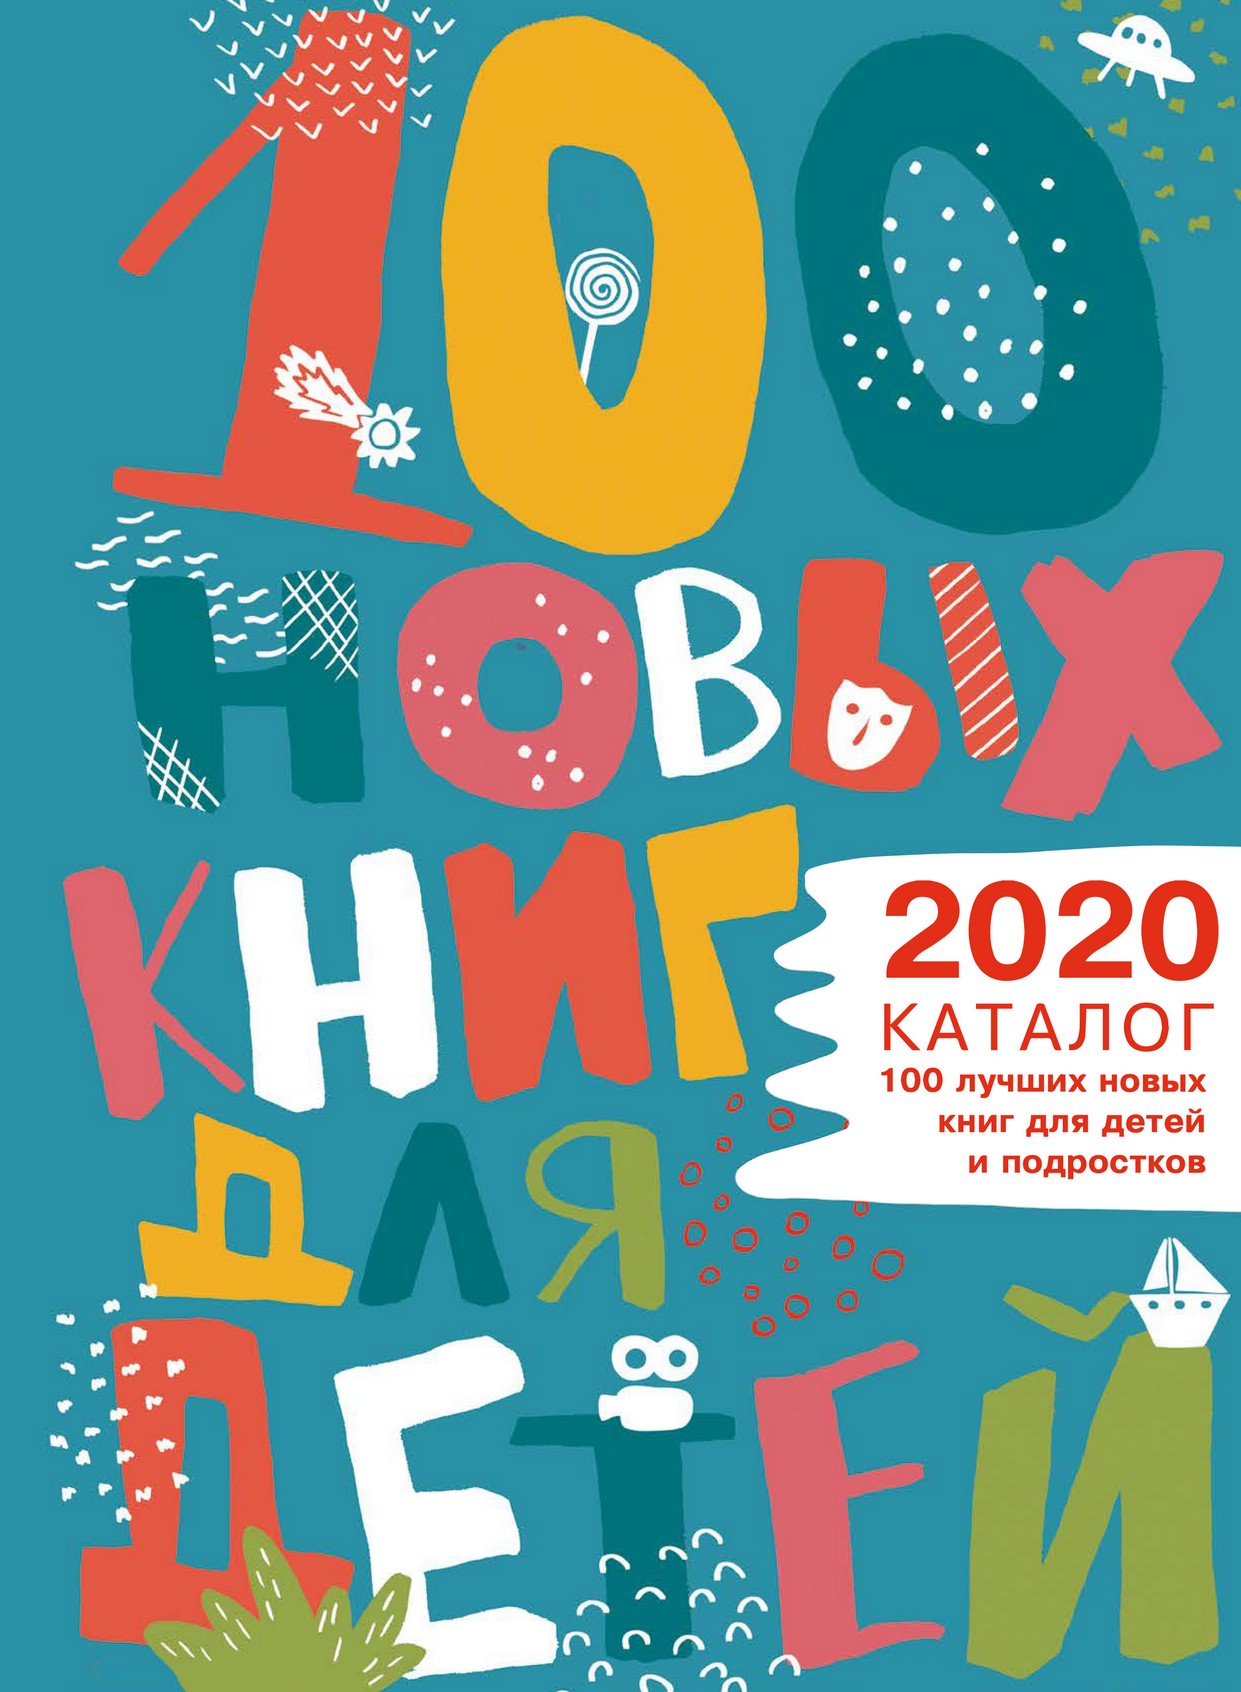 Нажмите для просмотра. Нажмите для просмотра. 100 новых книг для детей и подростков: каталог 2020